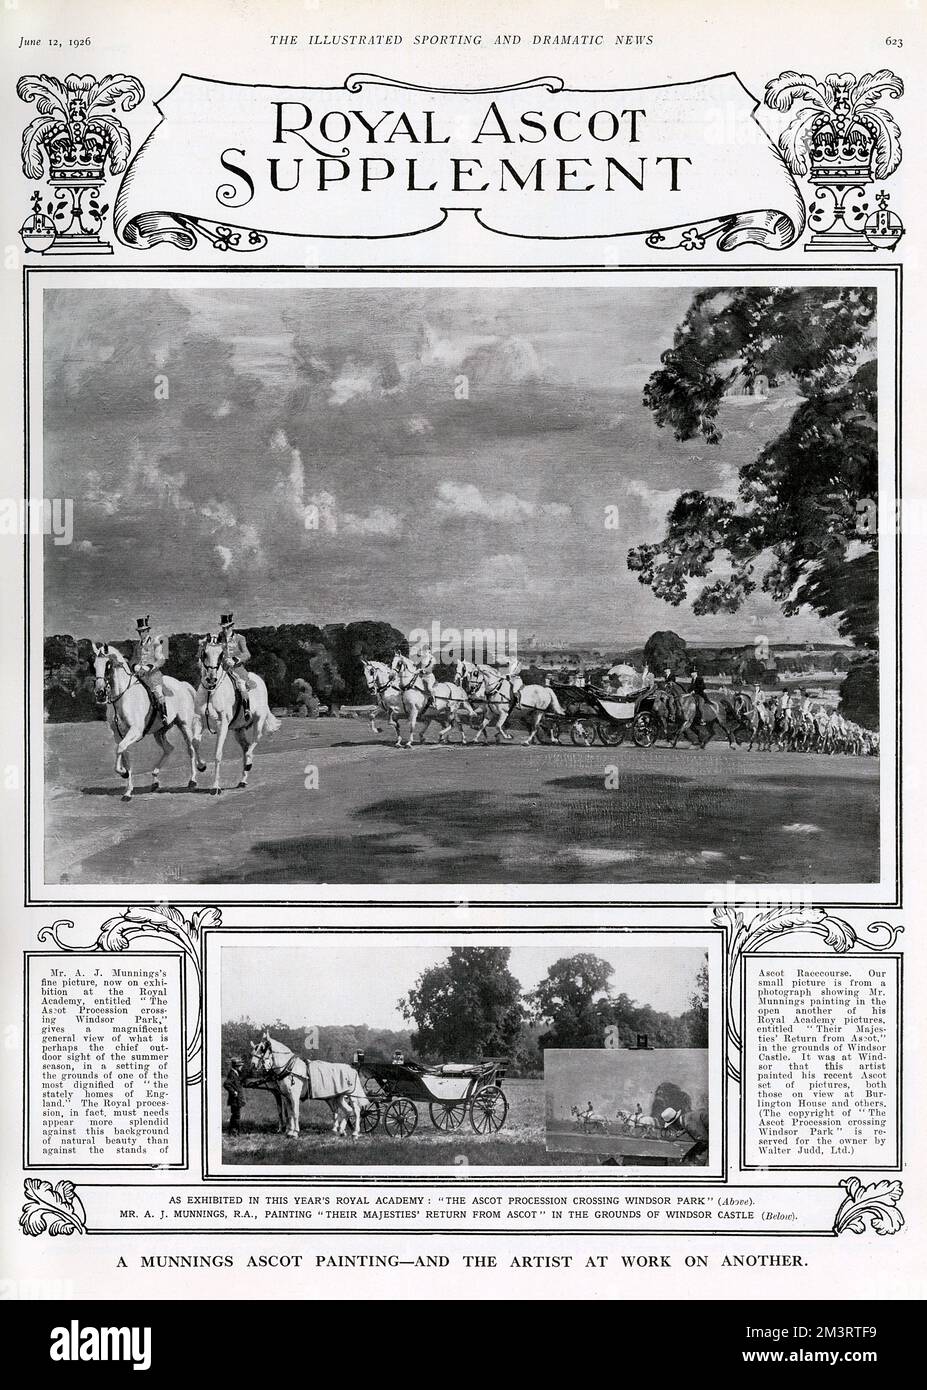 La Processione Ascot che attraversa il Windsor Park di Sir Alfred James Munnings R.A. (1878-1959). Di seguito è riportata una piccola fotografia che mostra l'artista al lavoro su un altro dipinto all'interno del Castello di Windsor. Data: 1926 Foto Stock